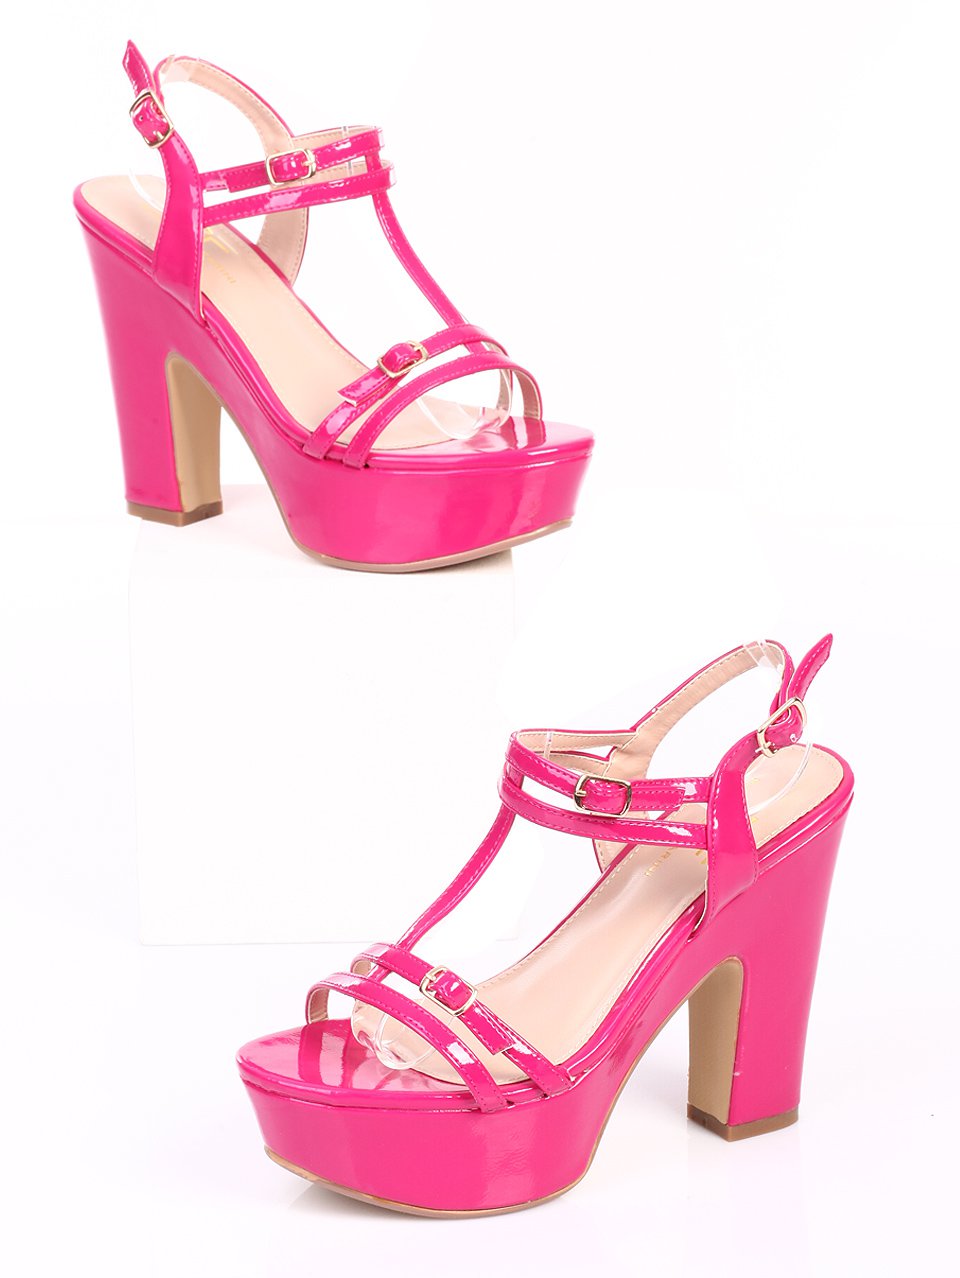 Елегантни дамски сандали на ток в цикламен цвят 4S-15299 fuchsia